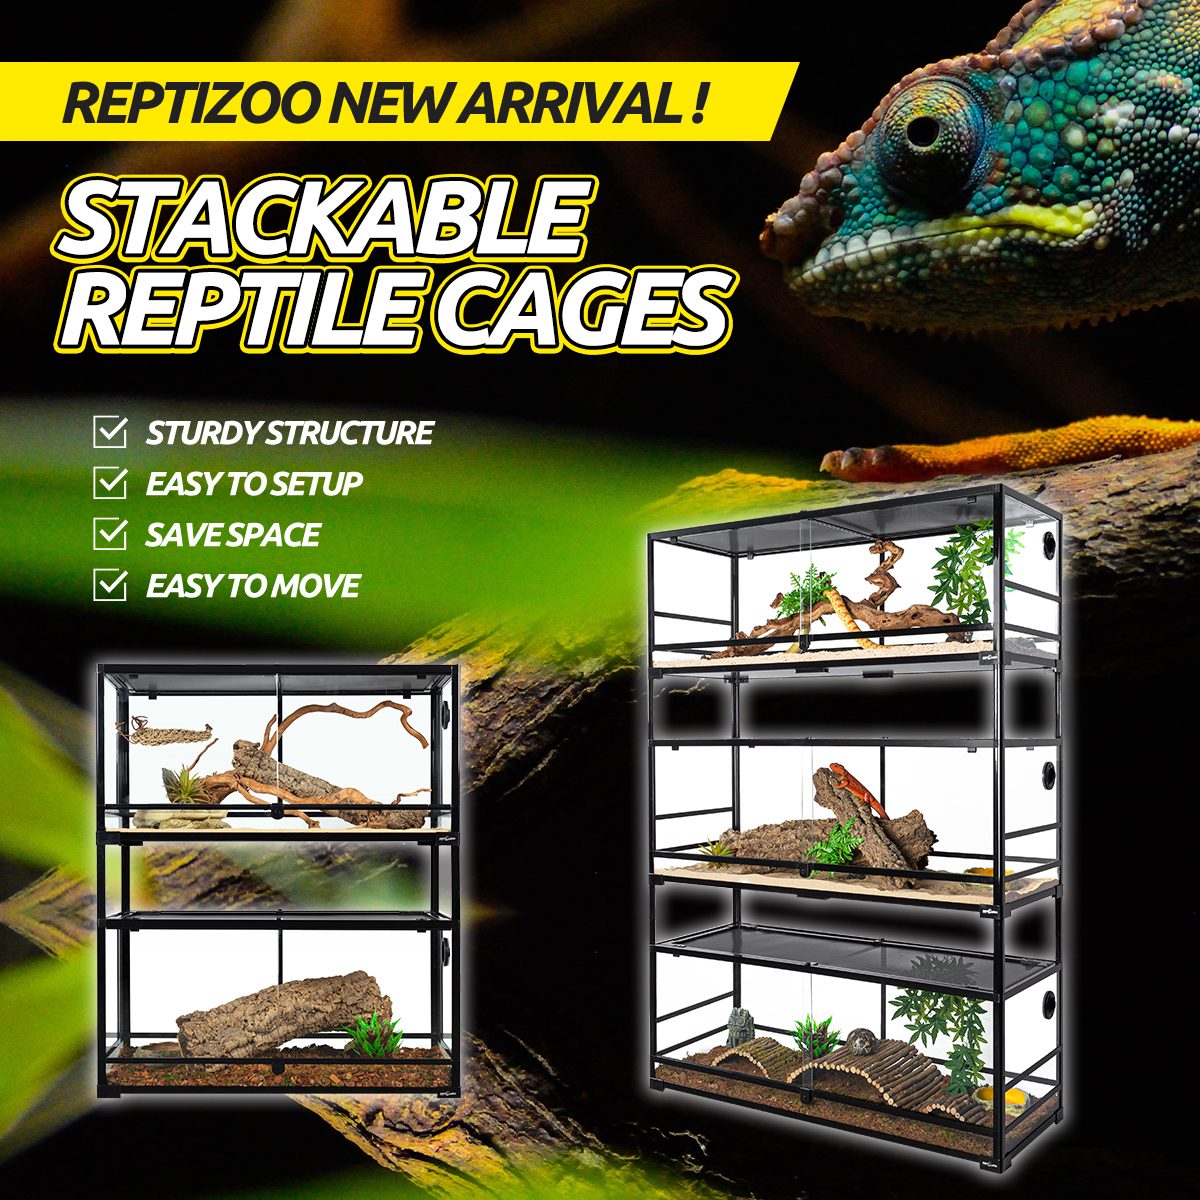 gå kighul Ruin Reptizoo Provides The Perfect Reptile Habitats – REPTI ZOO